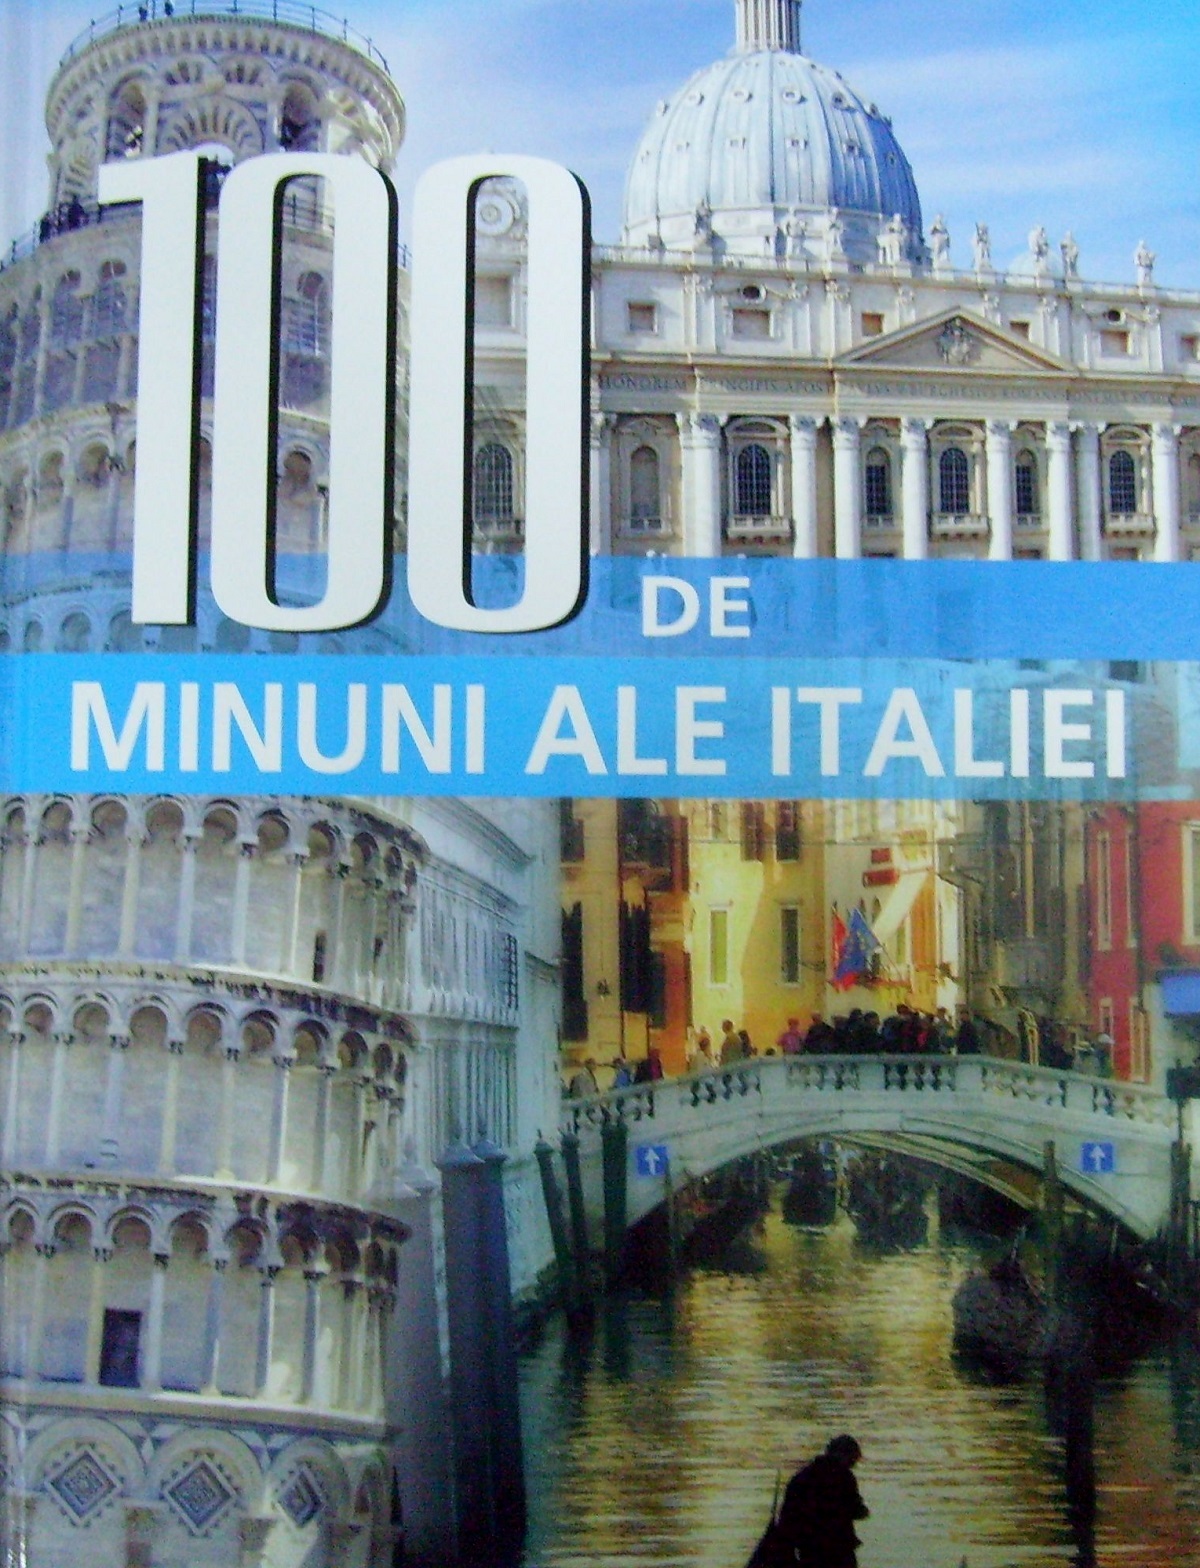 100 de minuni ale Italiei